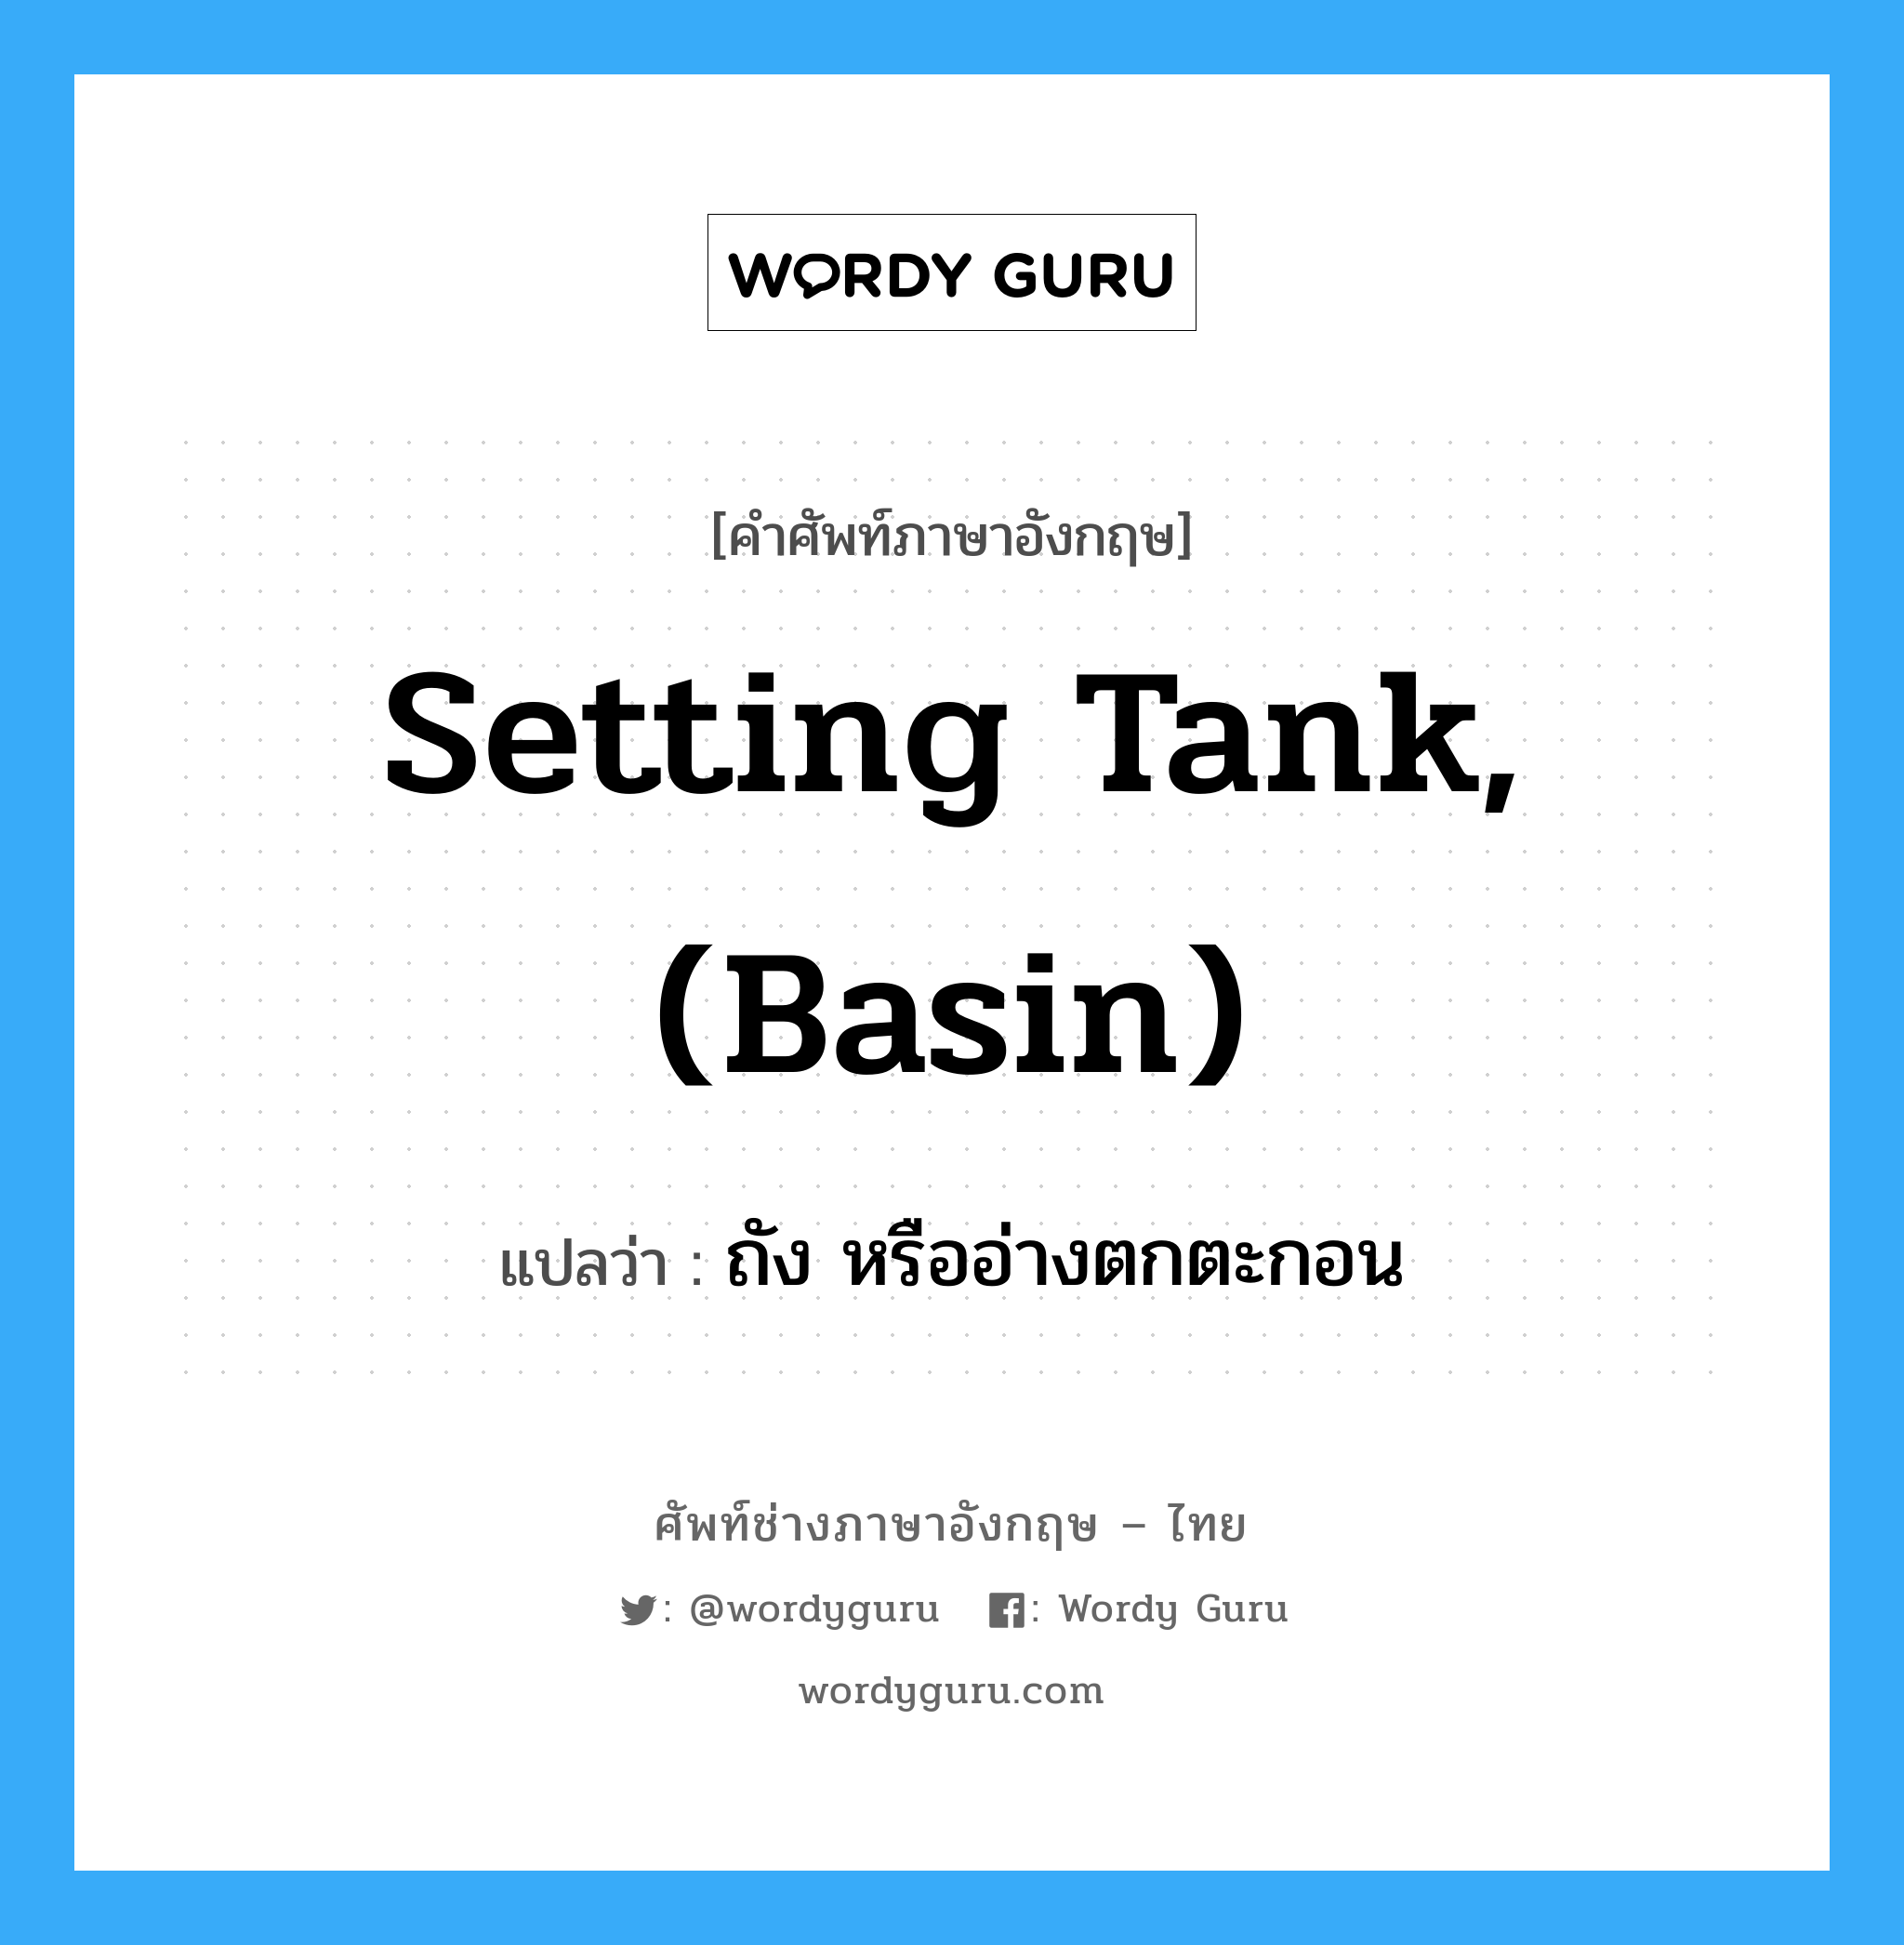 setting tank, (basin) แปลว่า?, คำศัพท์ช่างภาษาอังกฤษ - ไทย setting tank, (basin) คำศัพท์ภาษาอังกฤษ setting tank, (basin) แปลว่า ถัง หรืออ่างตกตะกอน